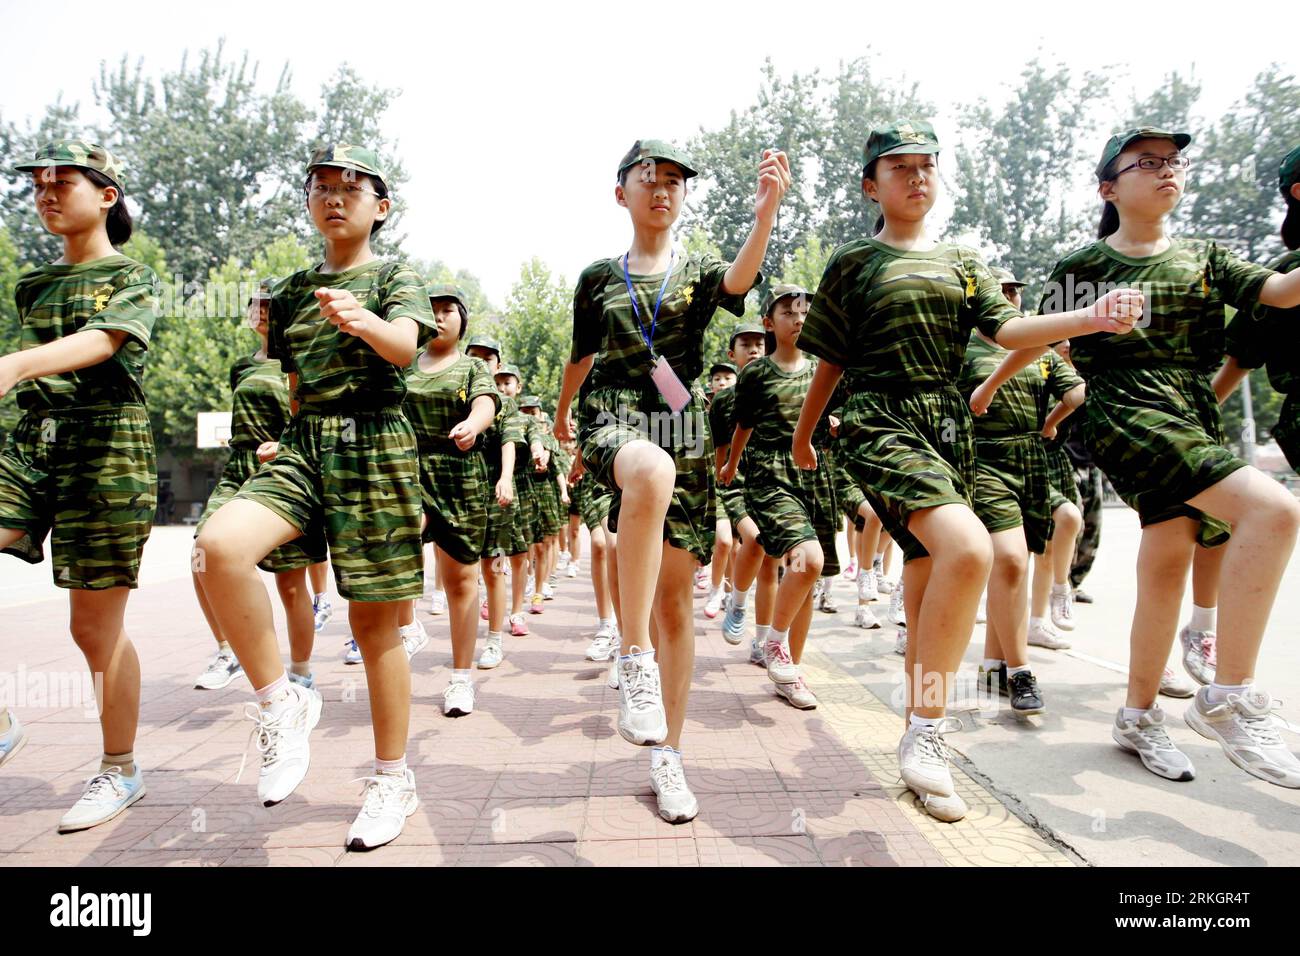 110724 -- JINAN, 24 juillet 2011 Xinhua -- un élève de l'école primaire marche dans une formation dans une école militaire d'été à Jinan, dans la province du Shandong de l'est de la Chine, le 24 juillet 2011. Alors que les vacances d'été arrivent, de plus en plus d'adolescents viennent à l'école d'entraînement d'été pour développer leur forme physique, leur capacité de survie sur le terrain et leur forte volonté. Xinhua/Liang Zhijie hdt CHINE-ÉLÈVE-ÉTÉ FORMATION MILITAIRE CN PUBLICATIONxNOTxINxCHN Banque D'Images